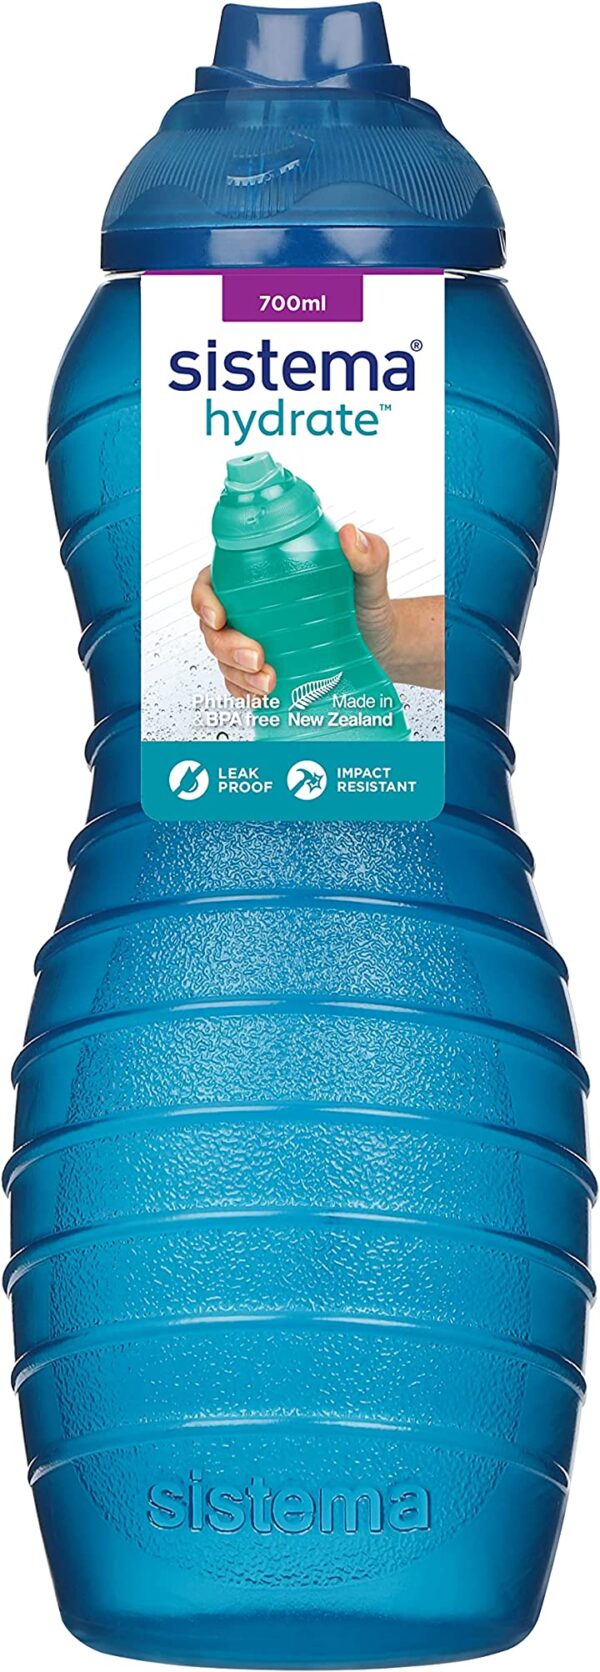 زجاجة مياه دافينا خالية من BPA من سيستيما، 700 مل، الوان متنوعة احصل على زجاجة مياه دافينا خالية من BPA من سيستيما، سعة 700 مل، متوفرة بألوان متنوعة. تسوق الآن واستمتع بالراحة والصحة.